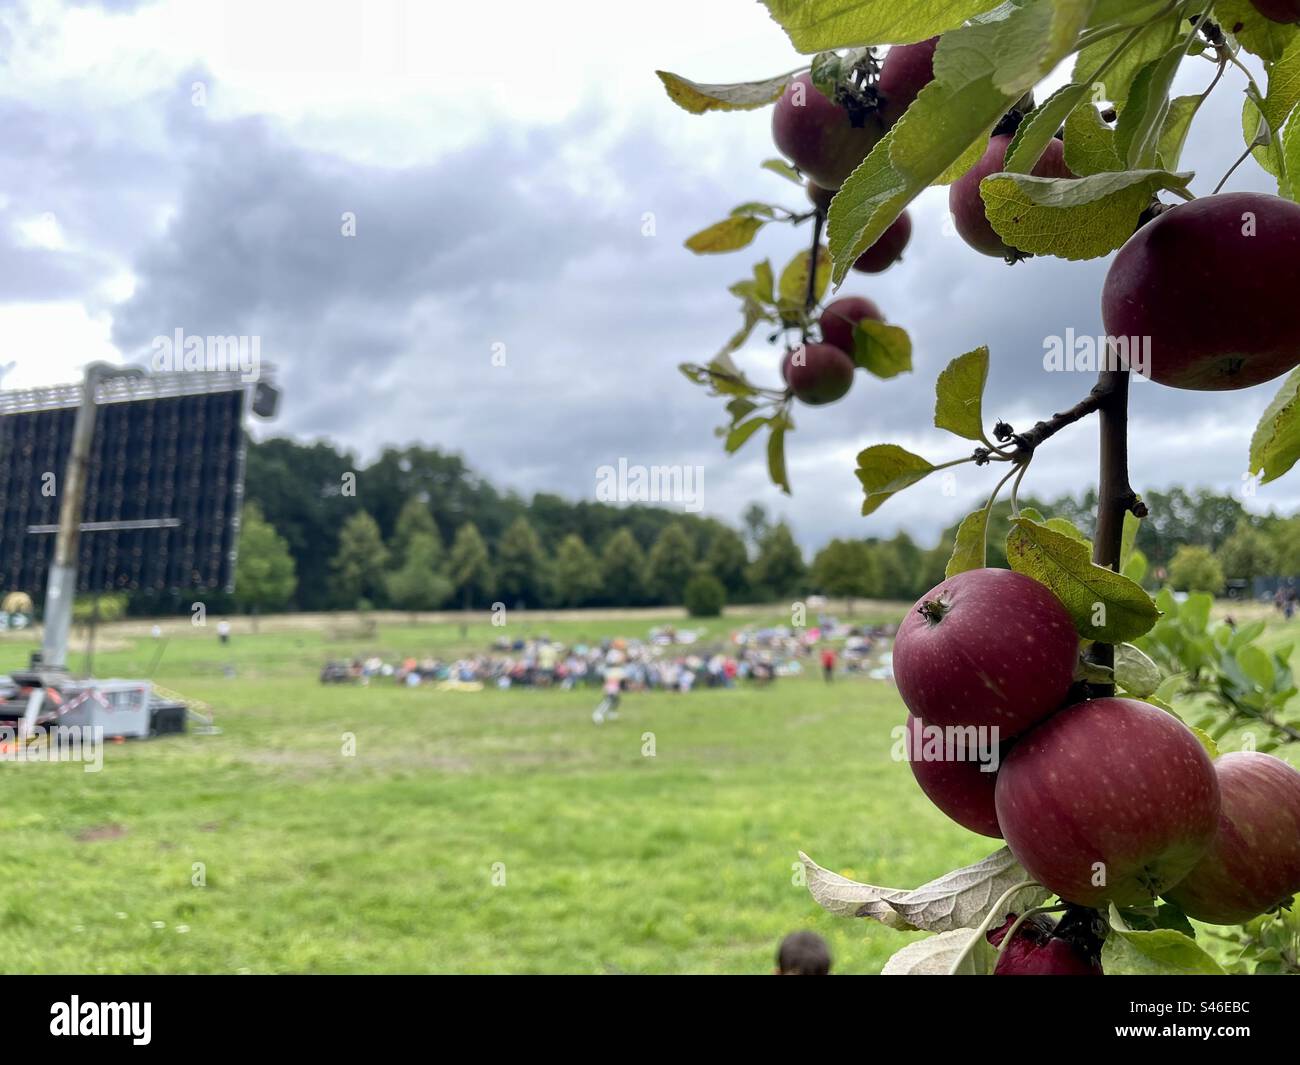 Rote Äpfel hängen von Ästen vor einem Dämmerungshimmel, während ein Open-Air-Kino im Hintergrund flackert. Eine harmonische Mischung aus Natur und Unterhaltung. Stockfoto